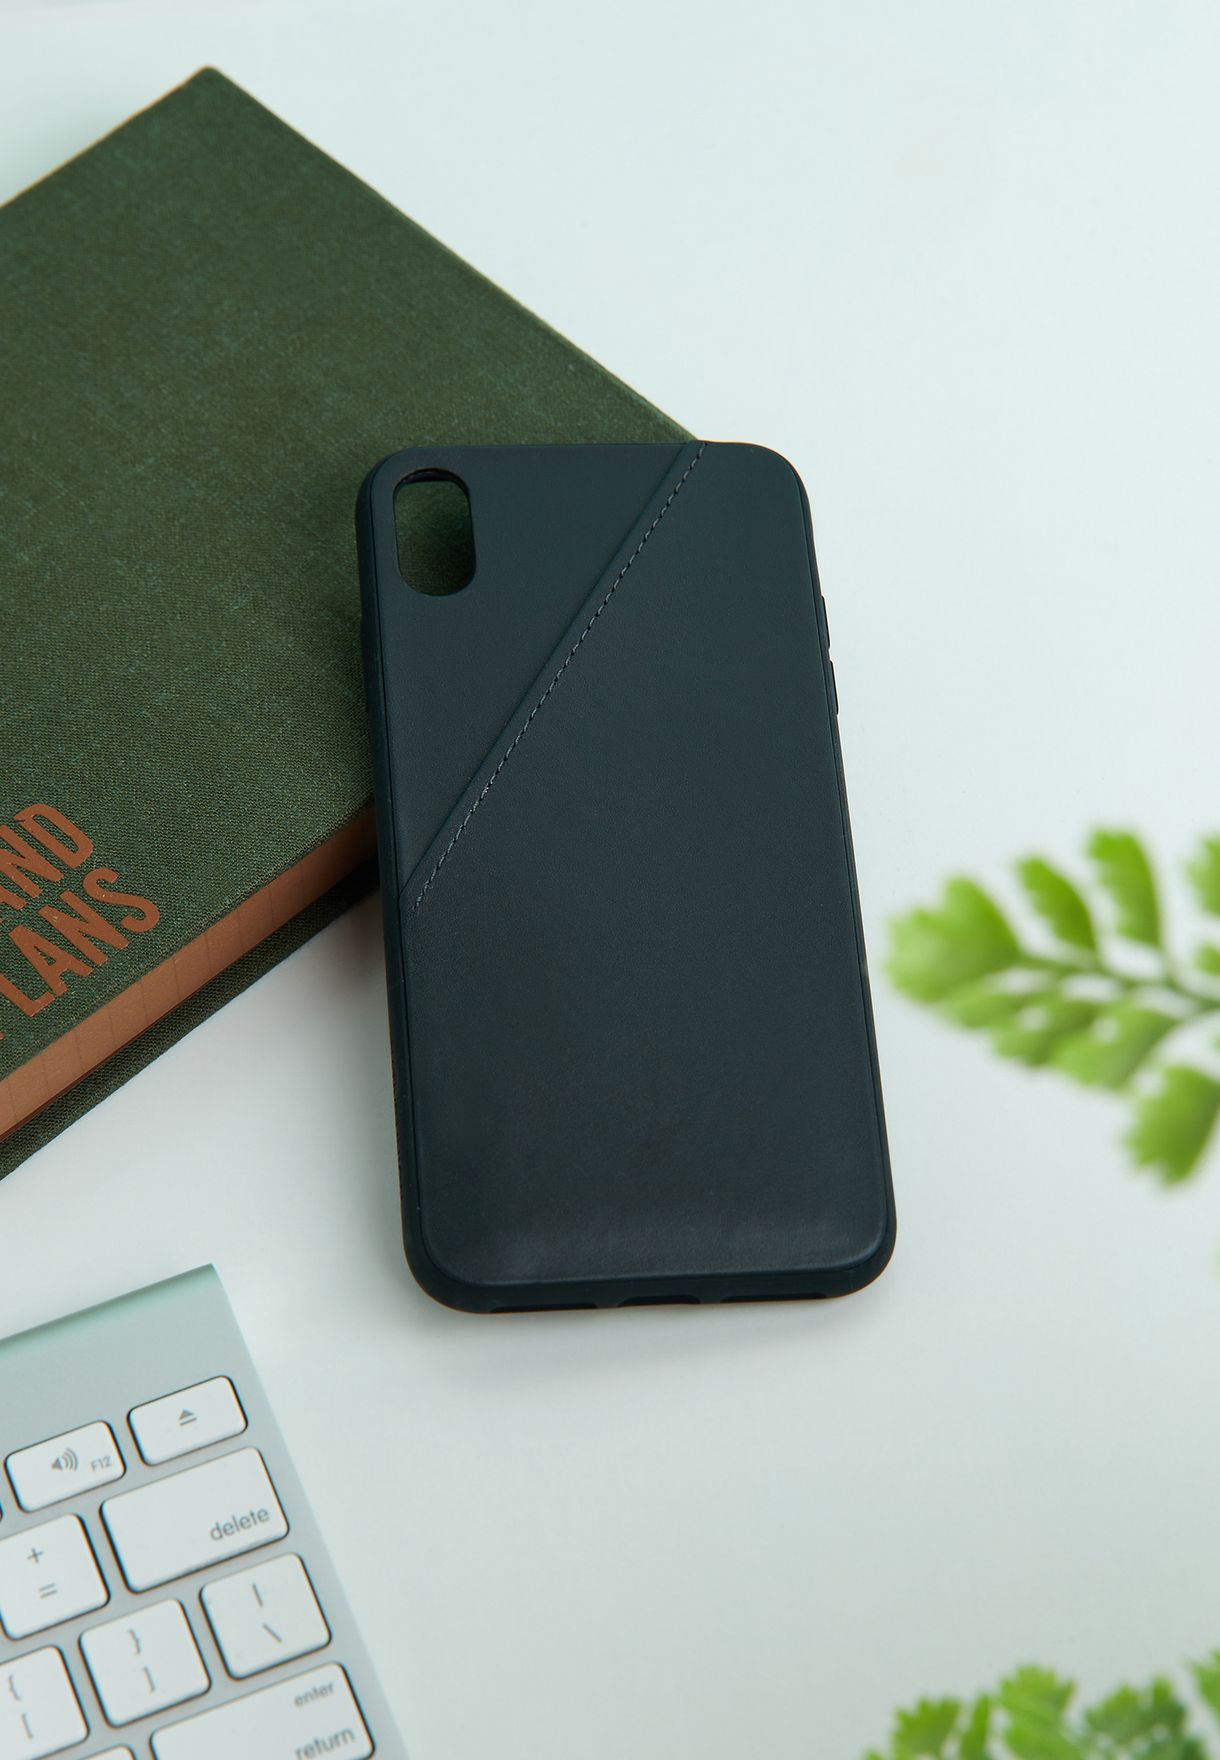 Clic Card Iphone X & Xs Max Case